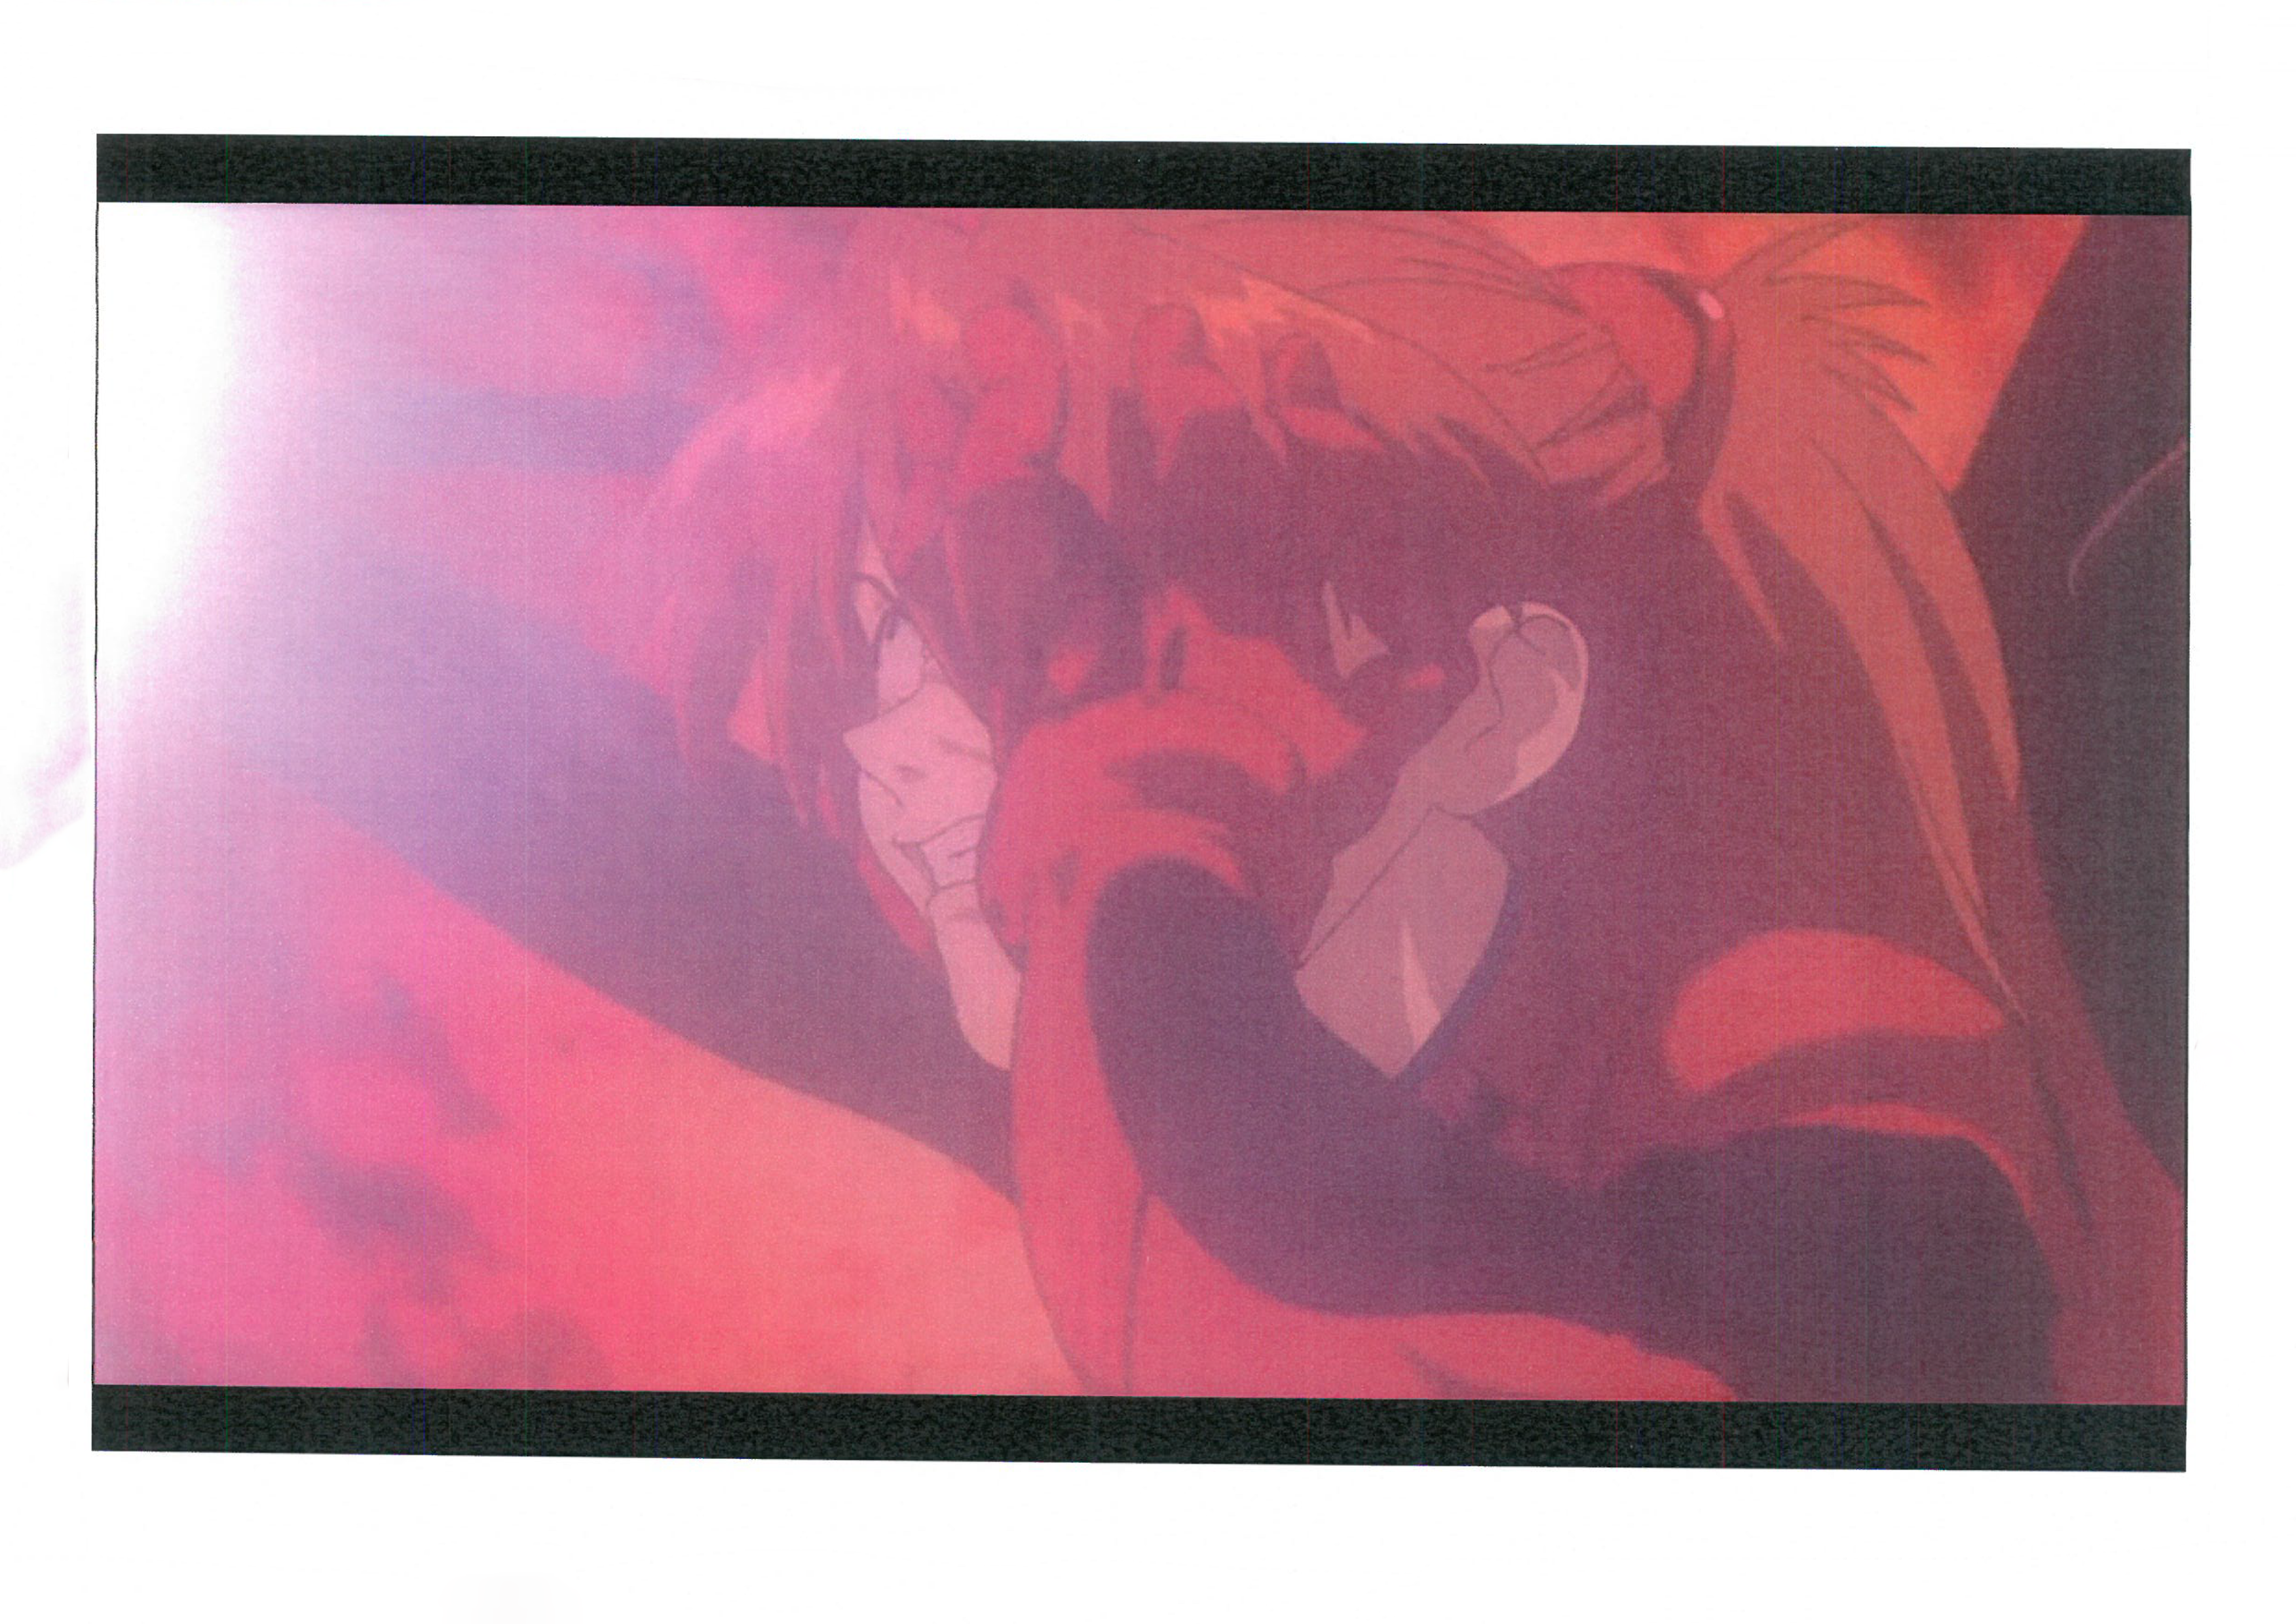 Escaneo de fotocopia de un fotograma de The end of Evangelion (1997), de Hideaki Anno y Kazuya Tsurumaki.